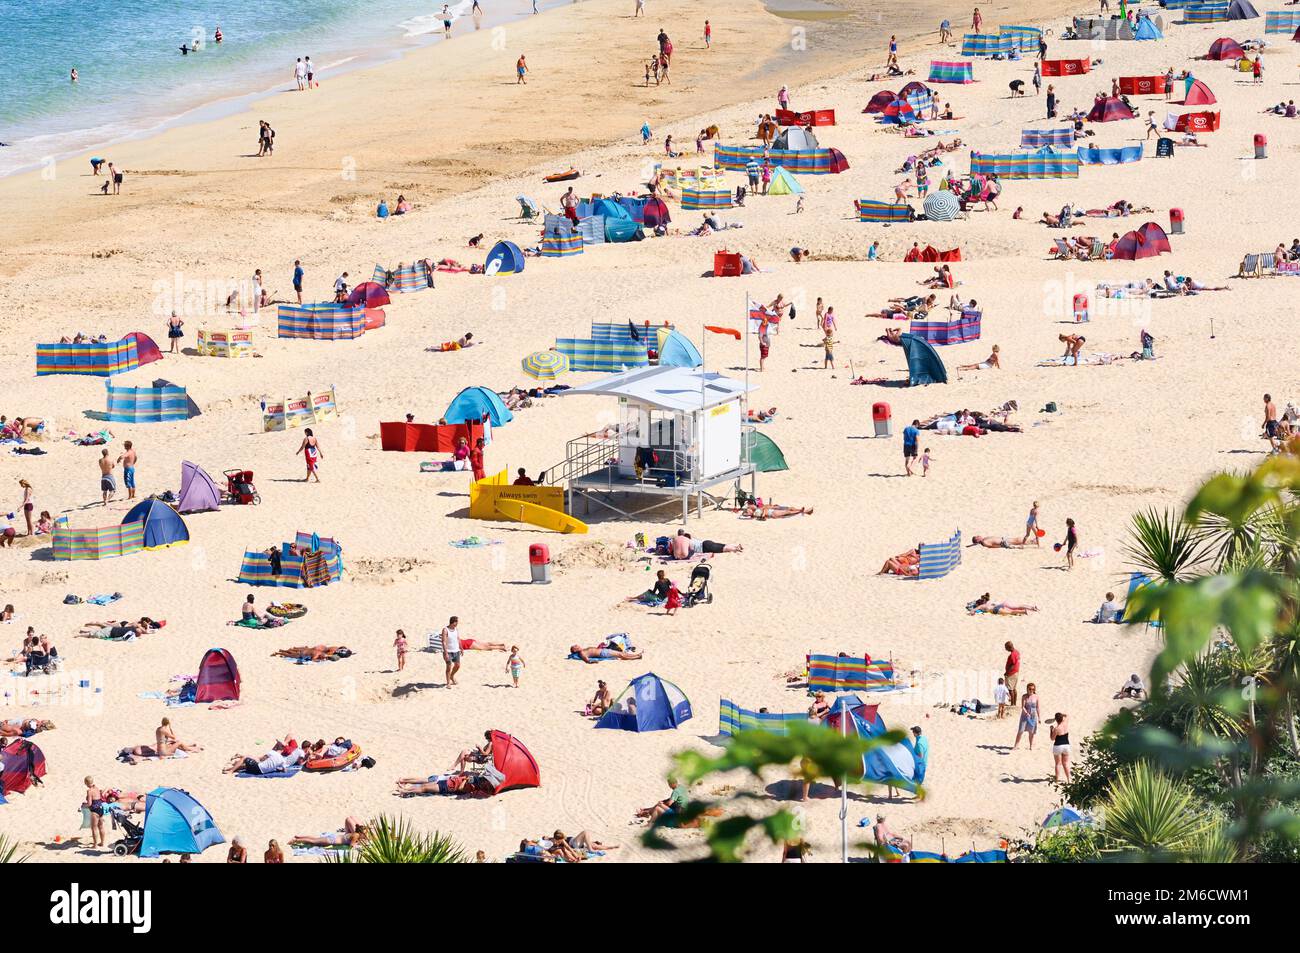 Urlauber und Touristen sonnen sich und genießen das Sommerwetter am Porthminster Beach mit RNLI Lifeguard Hut im Zentrum, St Ives, Cornwall, Großbritannien. Stockfoto